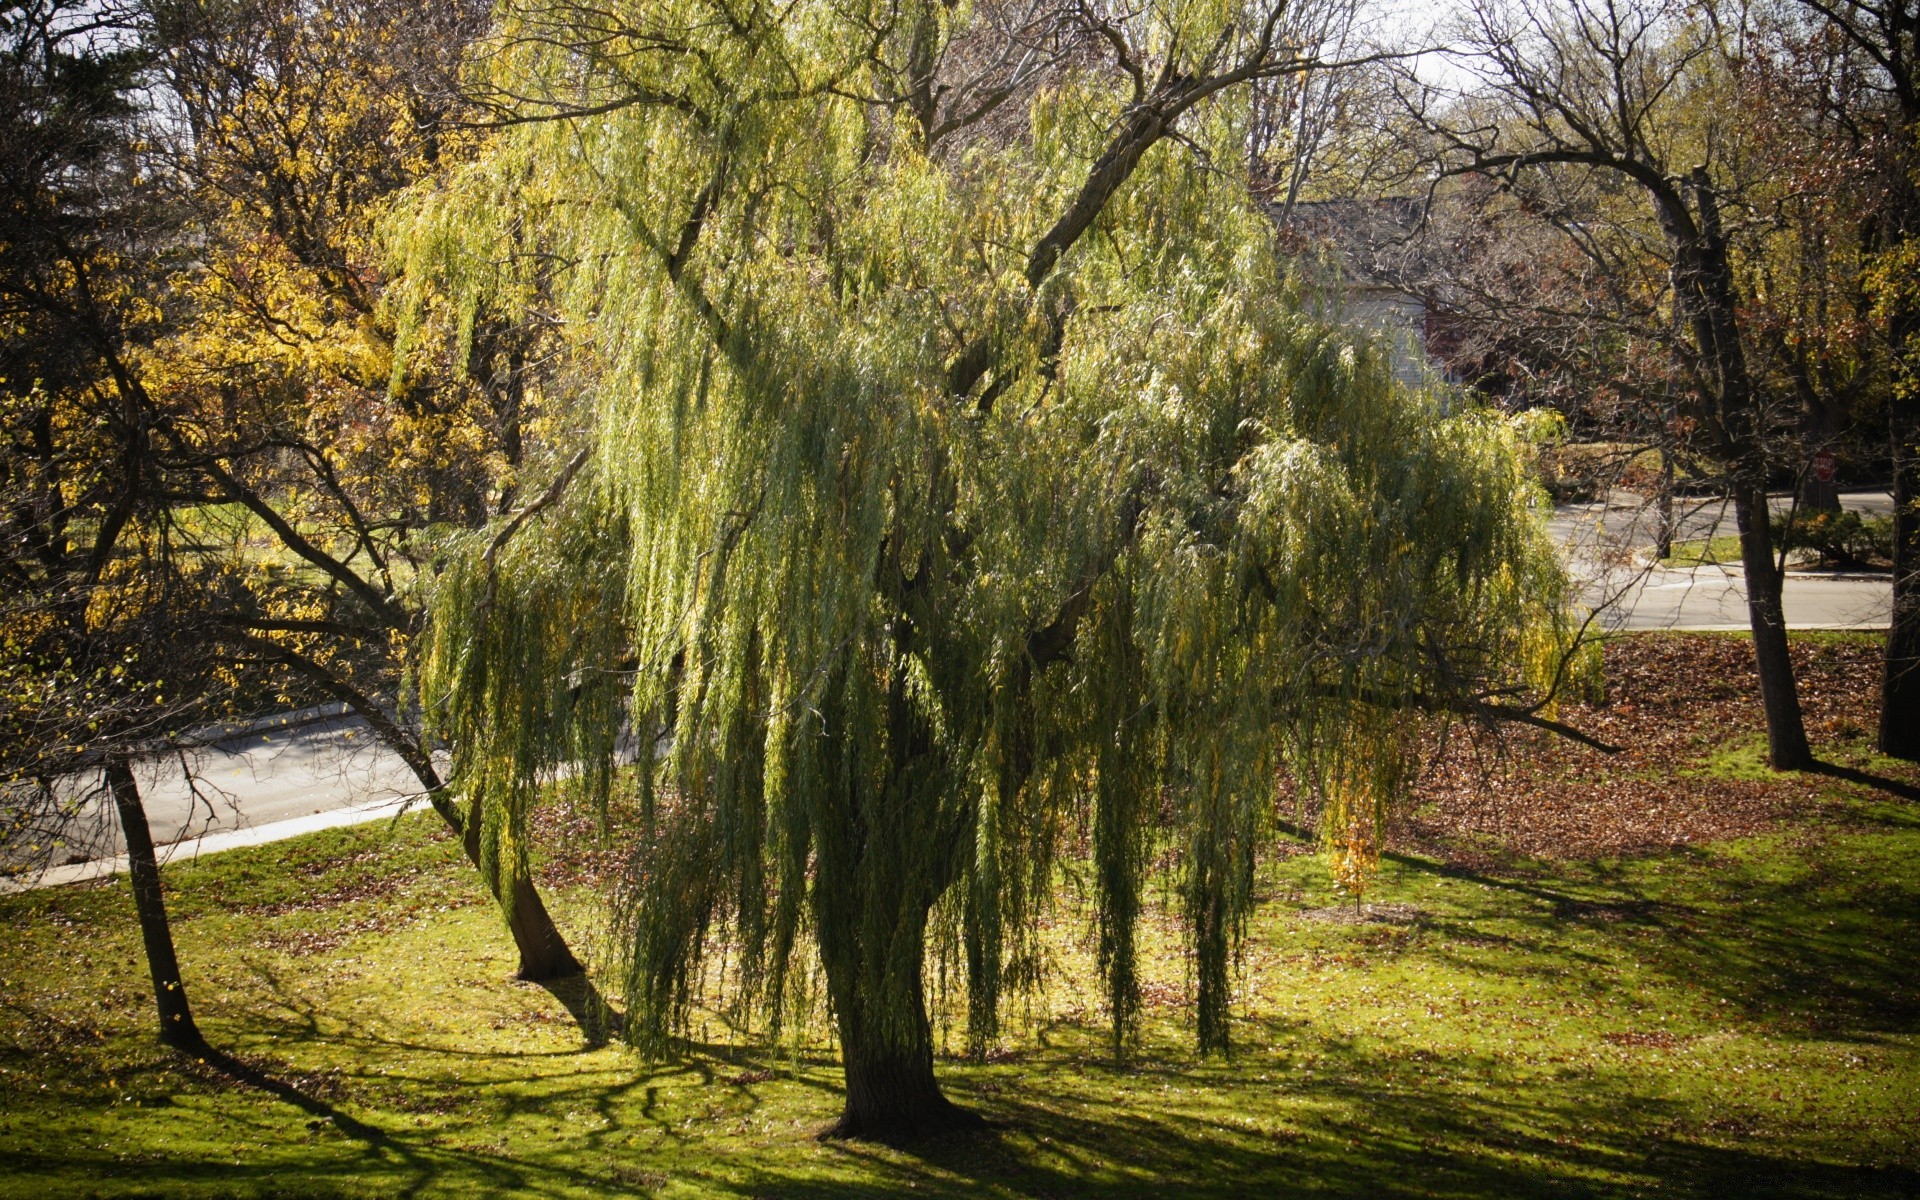 лес дерево пейзаж парк природа древесины сезон филиал осень лист руководство живописный на открытом воздухе среды хорошую погоду рассвет тень пышные пейзажи сельских